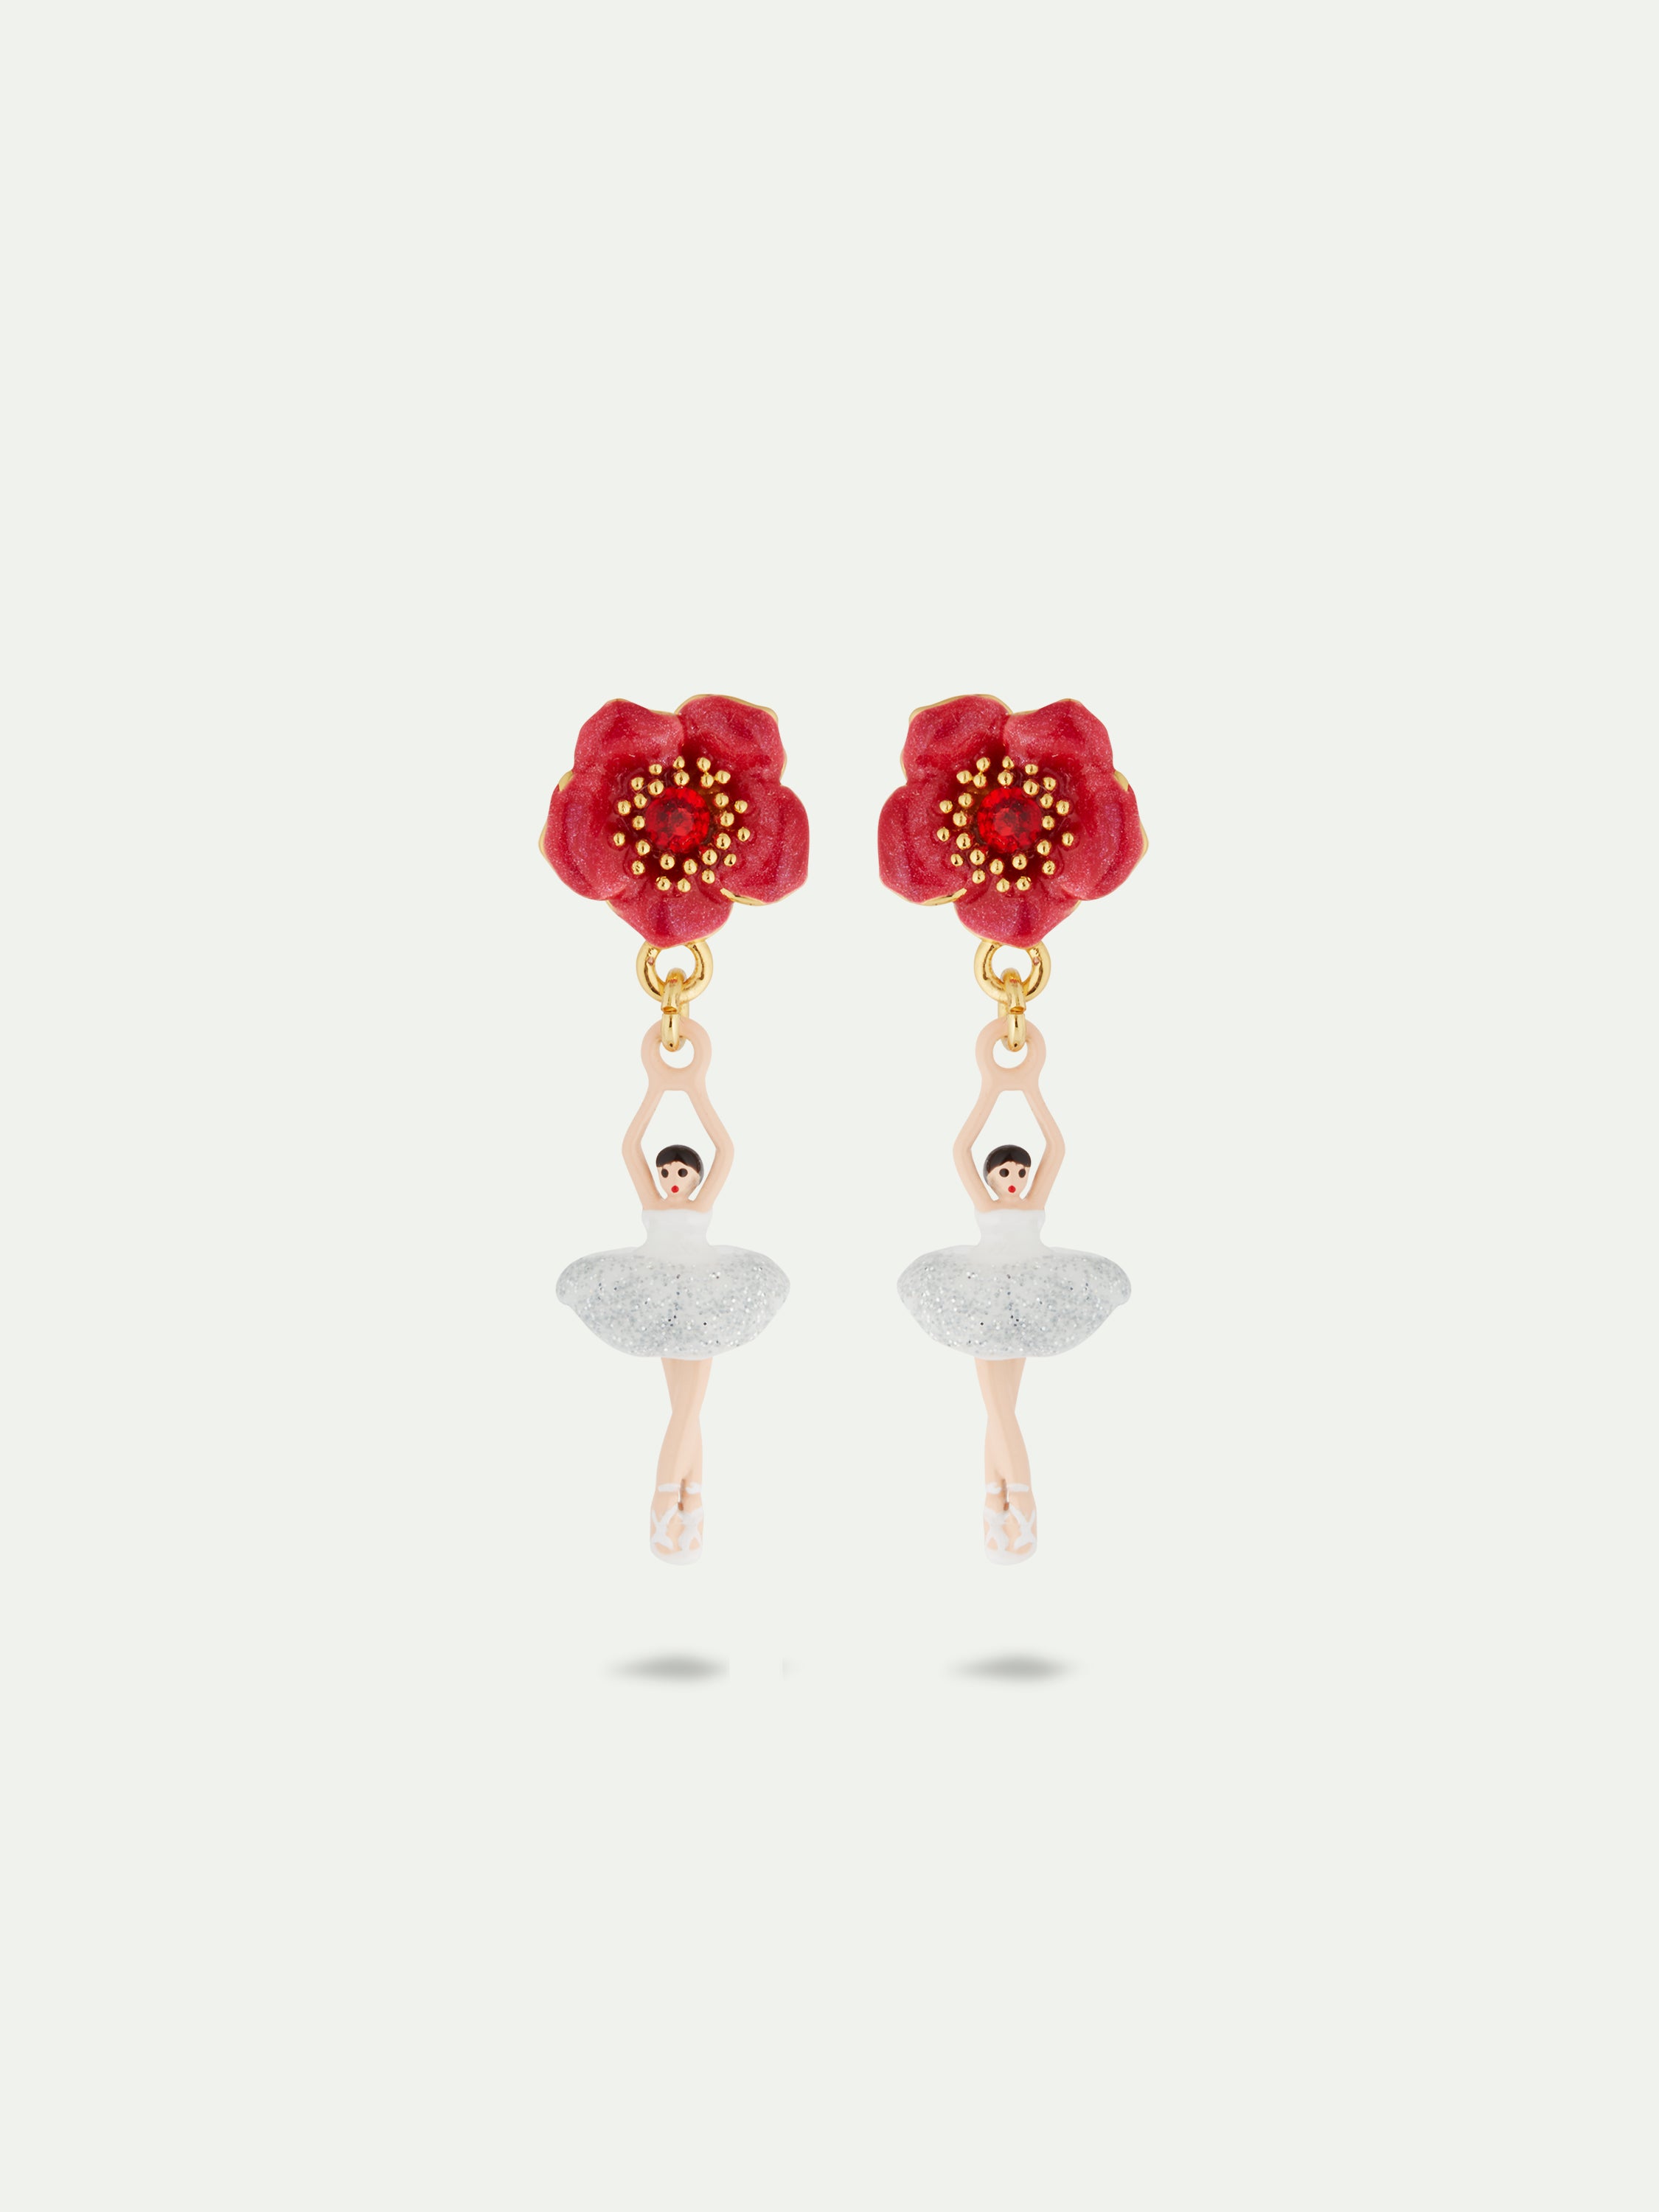 Pendientes bailarina y flor roja